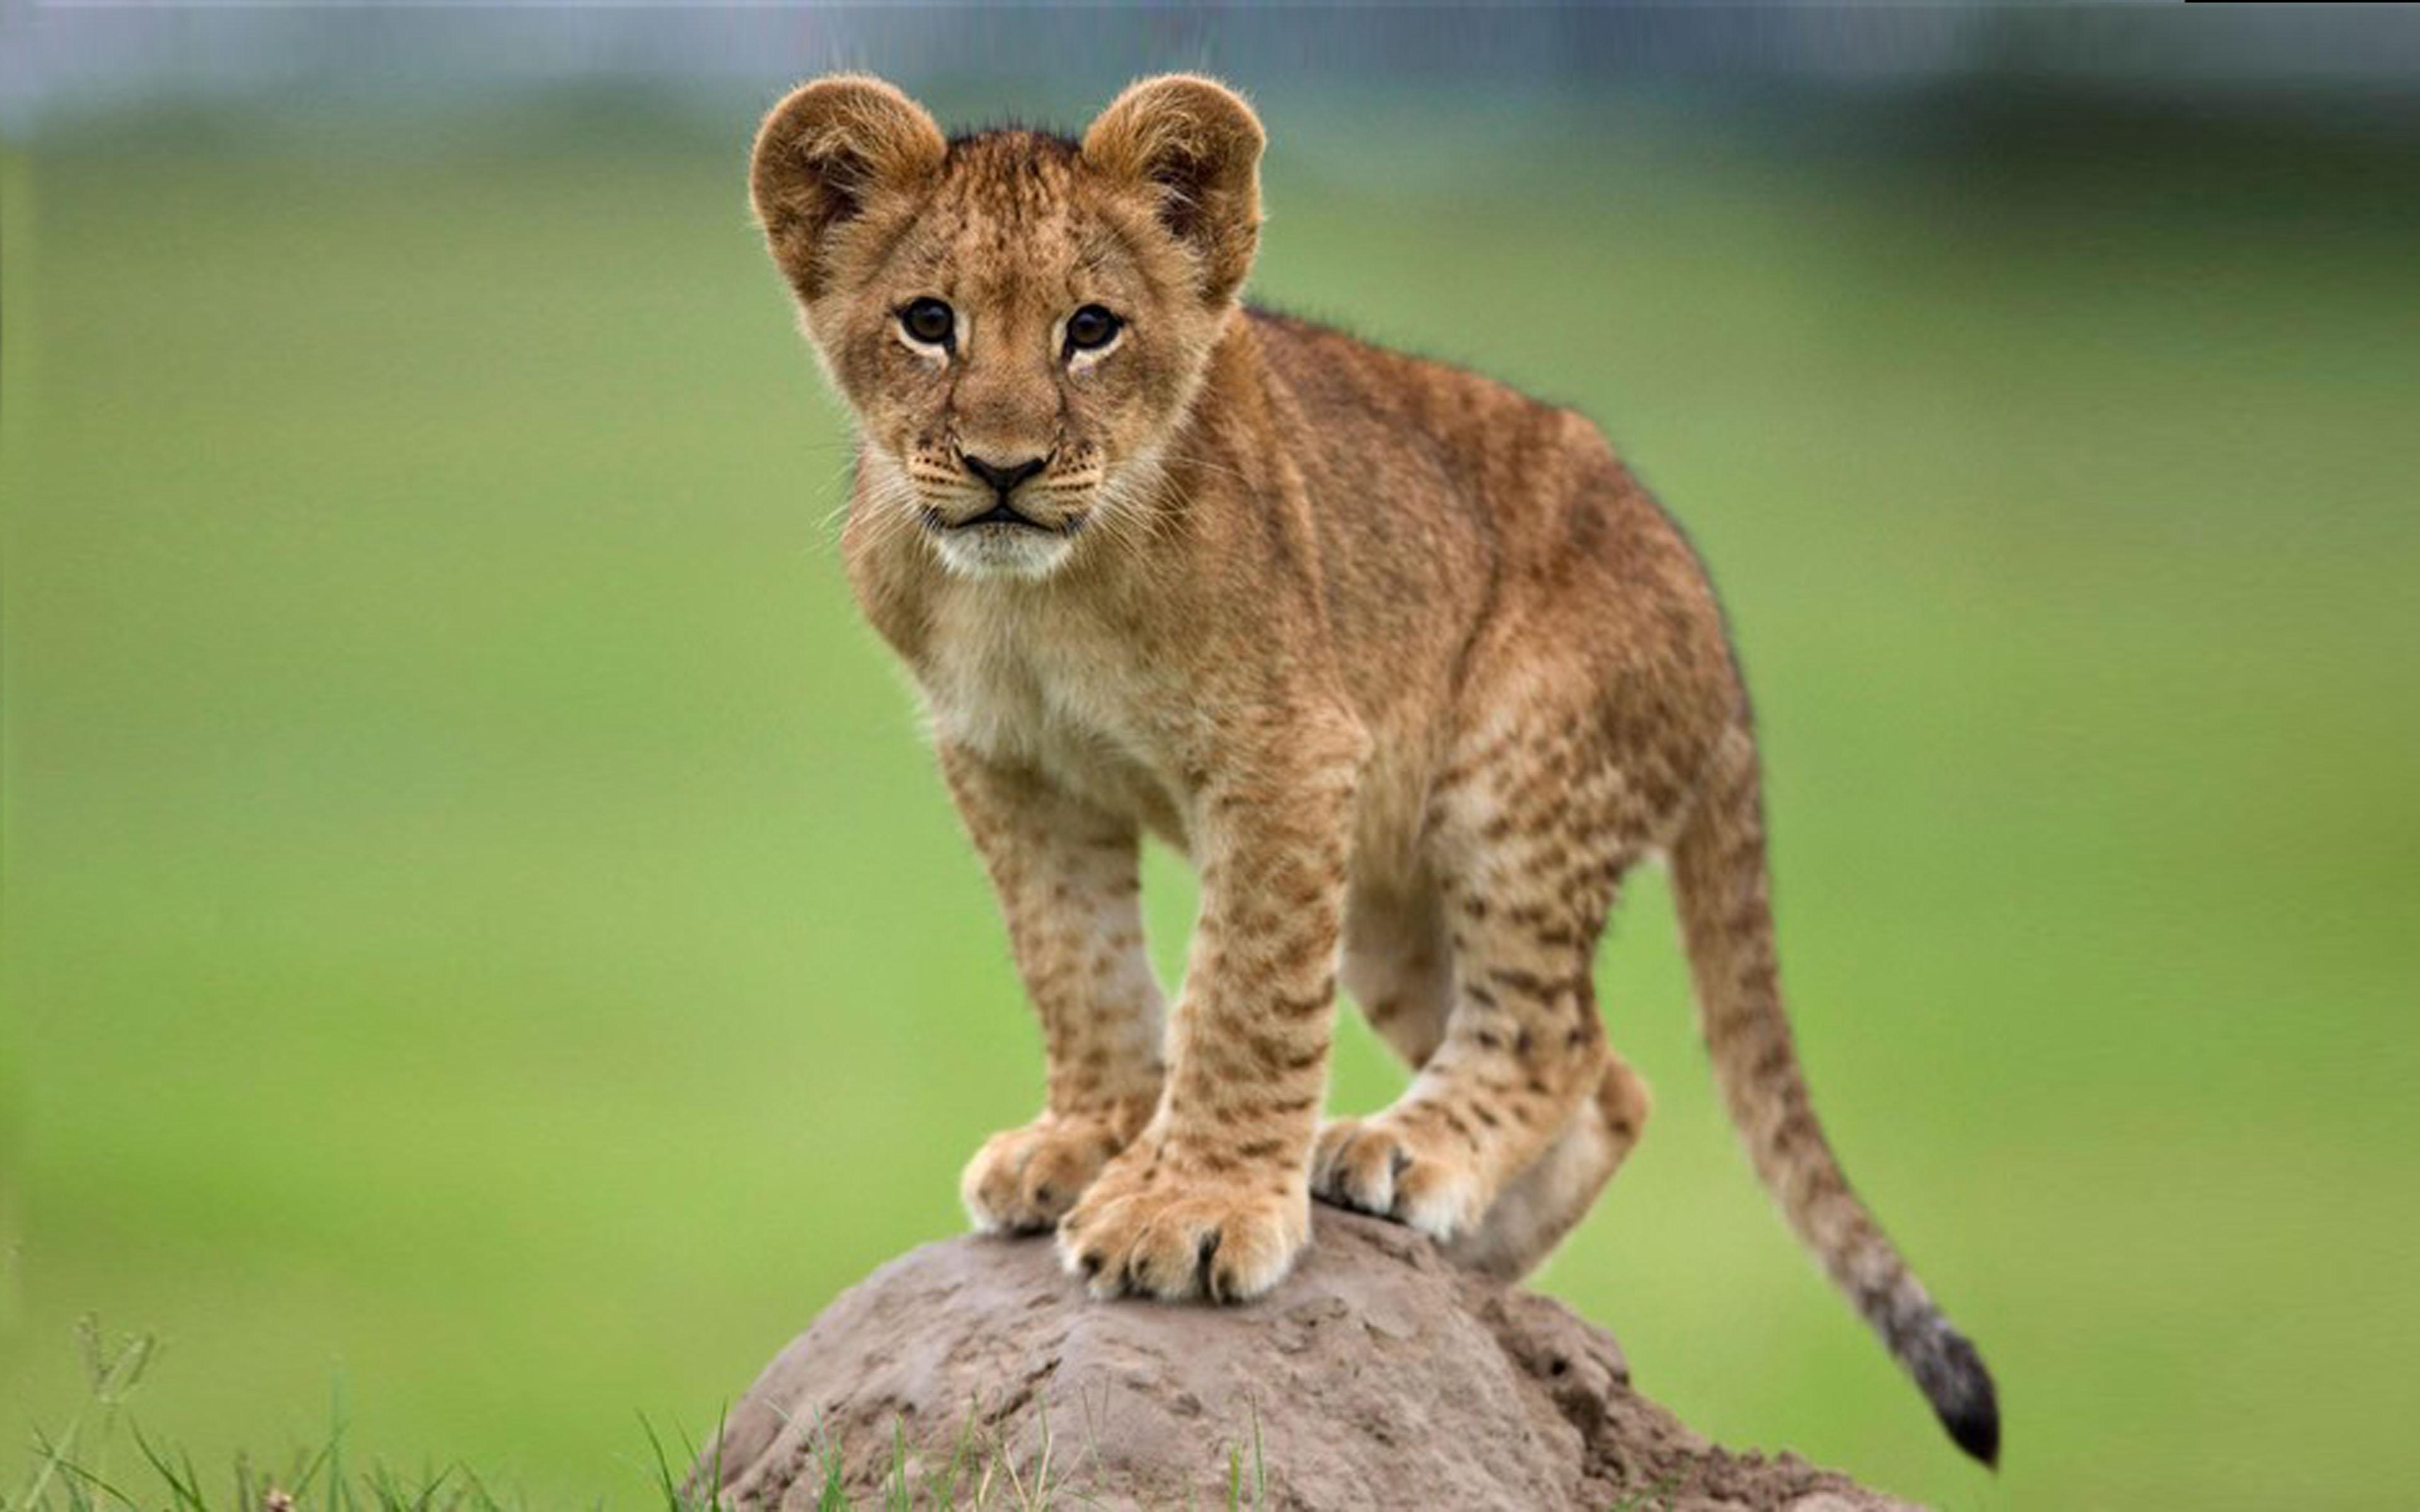 Cute Young African Lion On A Rock Desktop Wallpaper, Wallpaper13.com